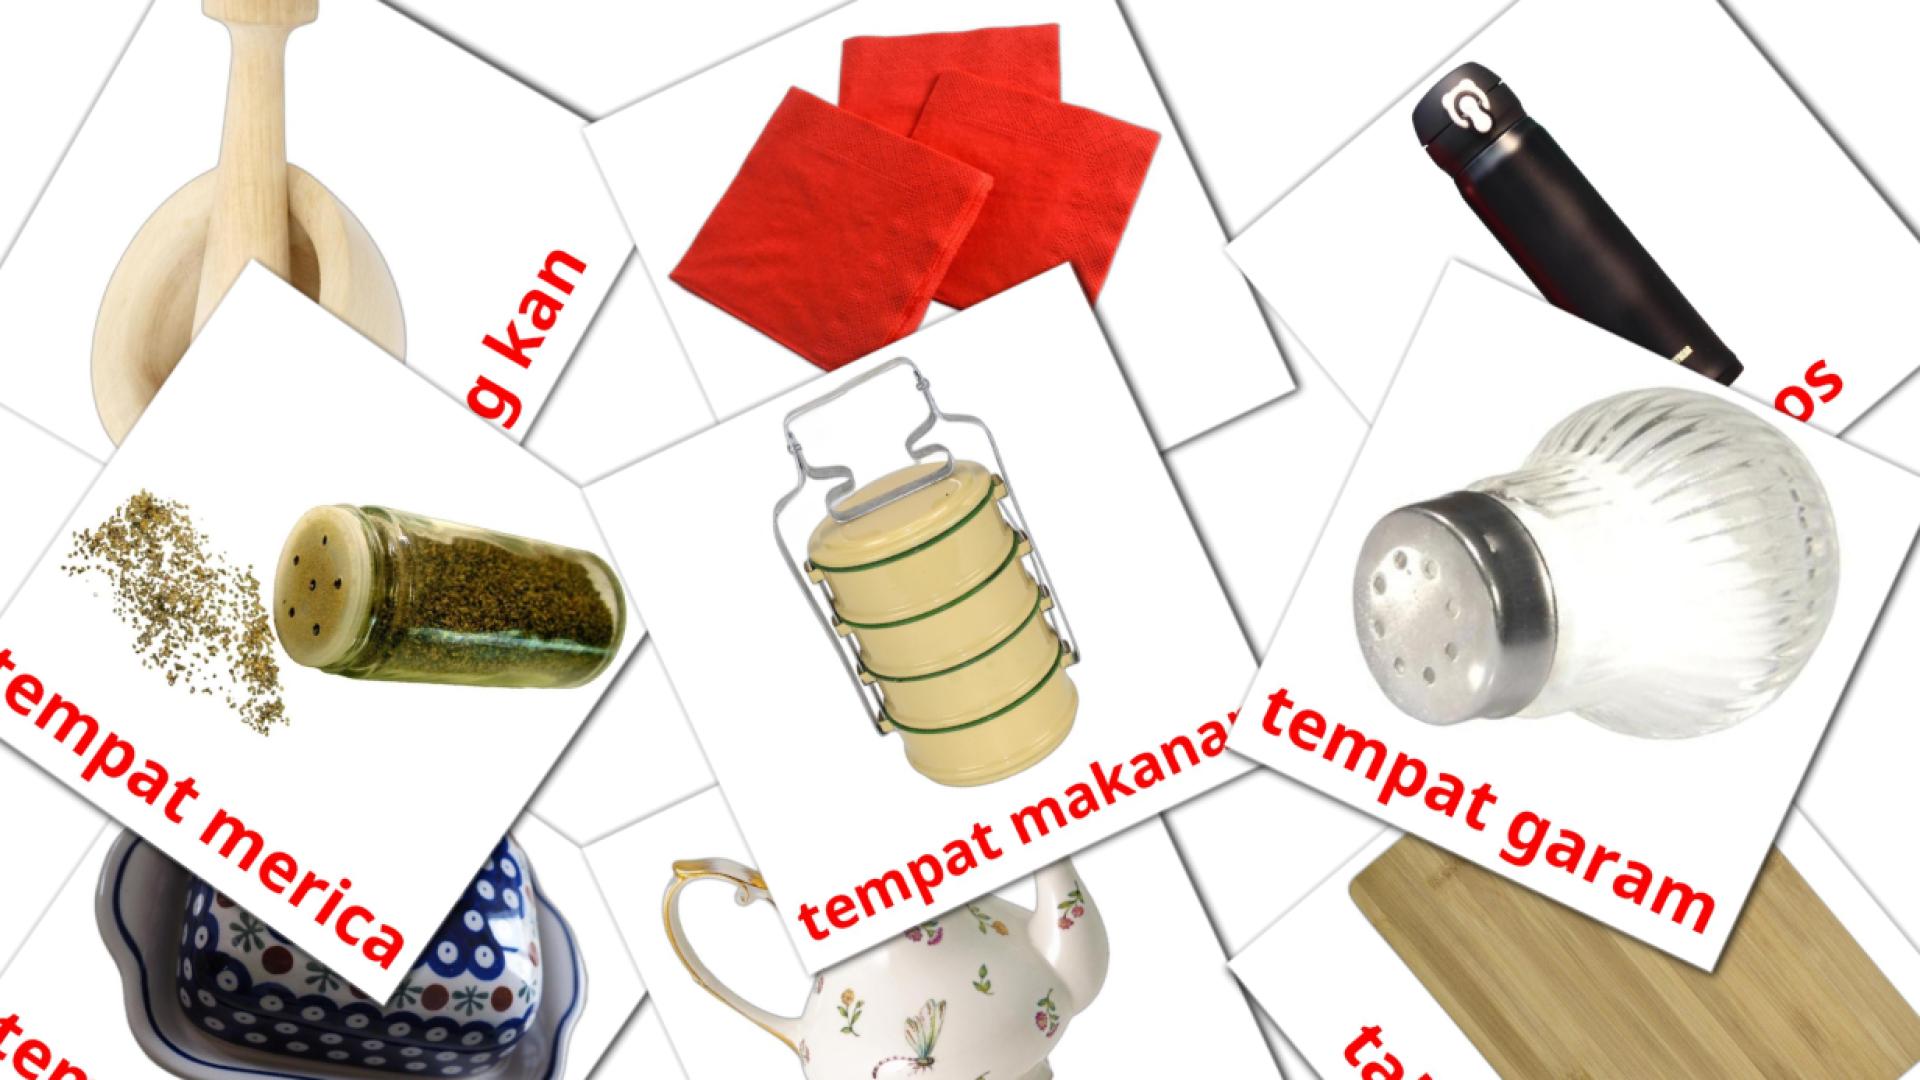 Dapur indonesisch woordenschat flashcards